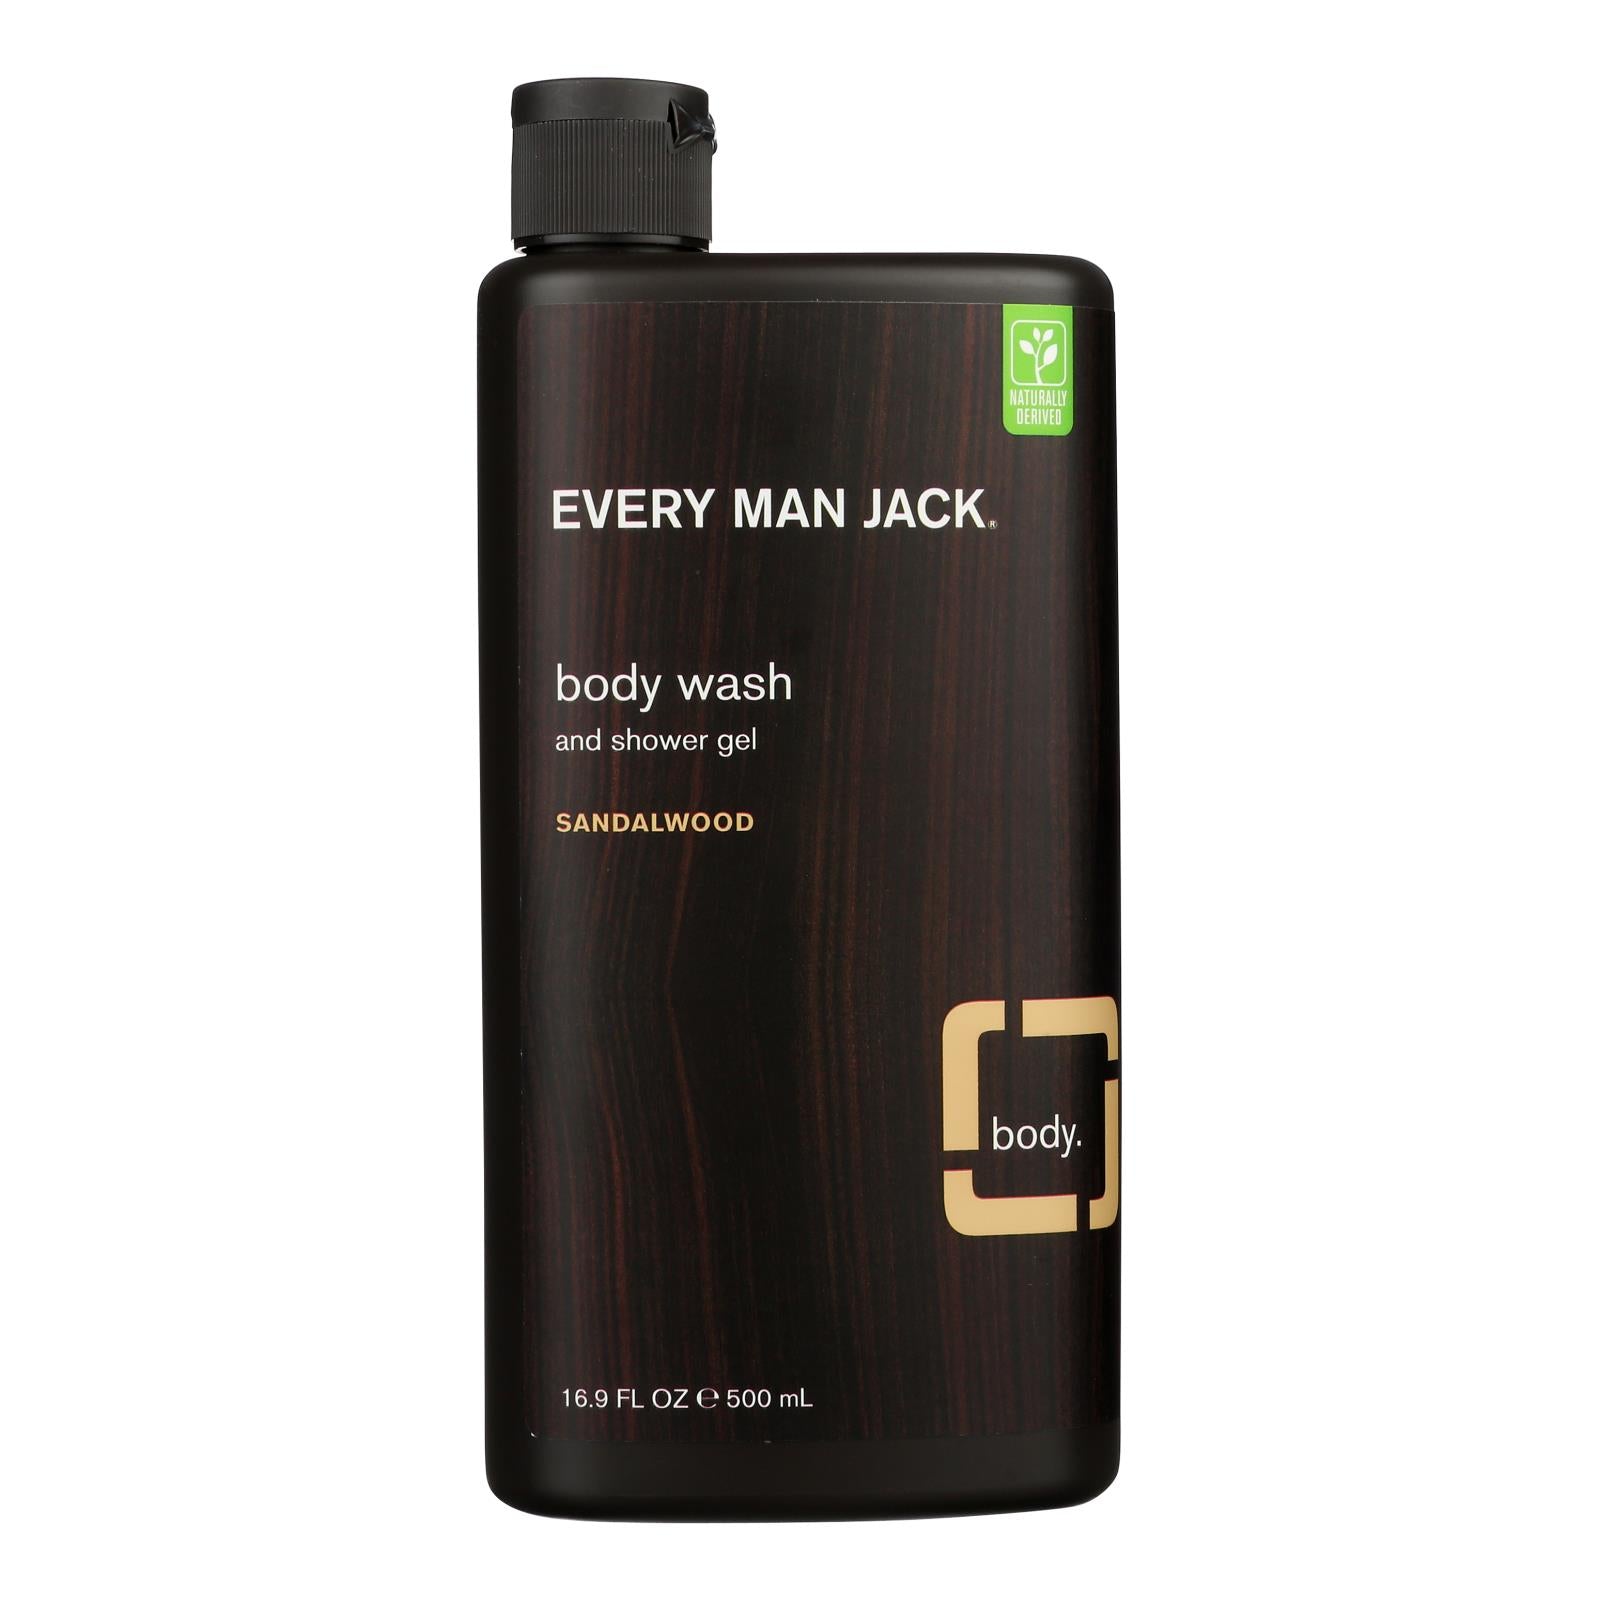 Every Man Jack Body Wash Sandalwood - 1 Each - 16.9 fl oz.